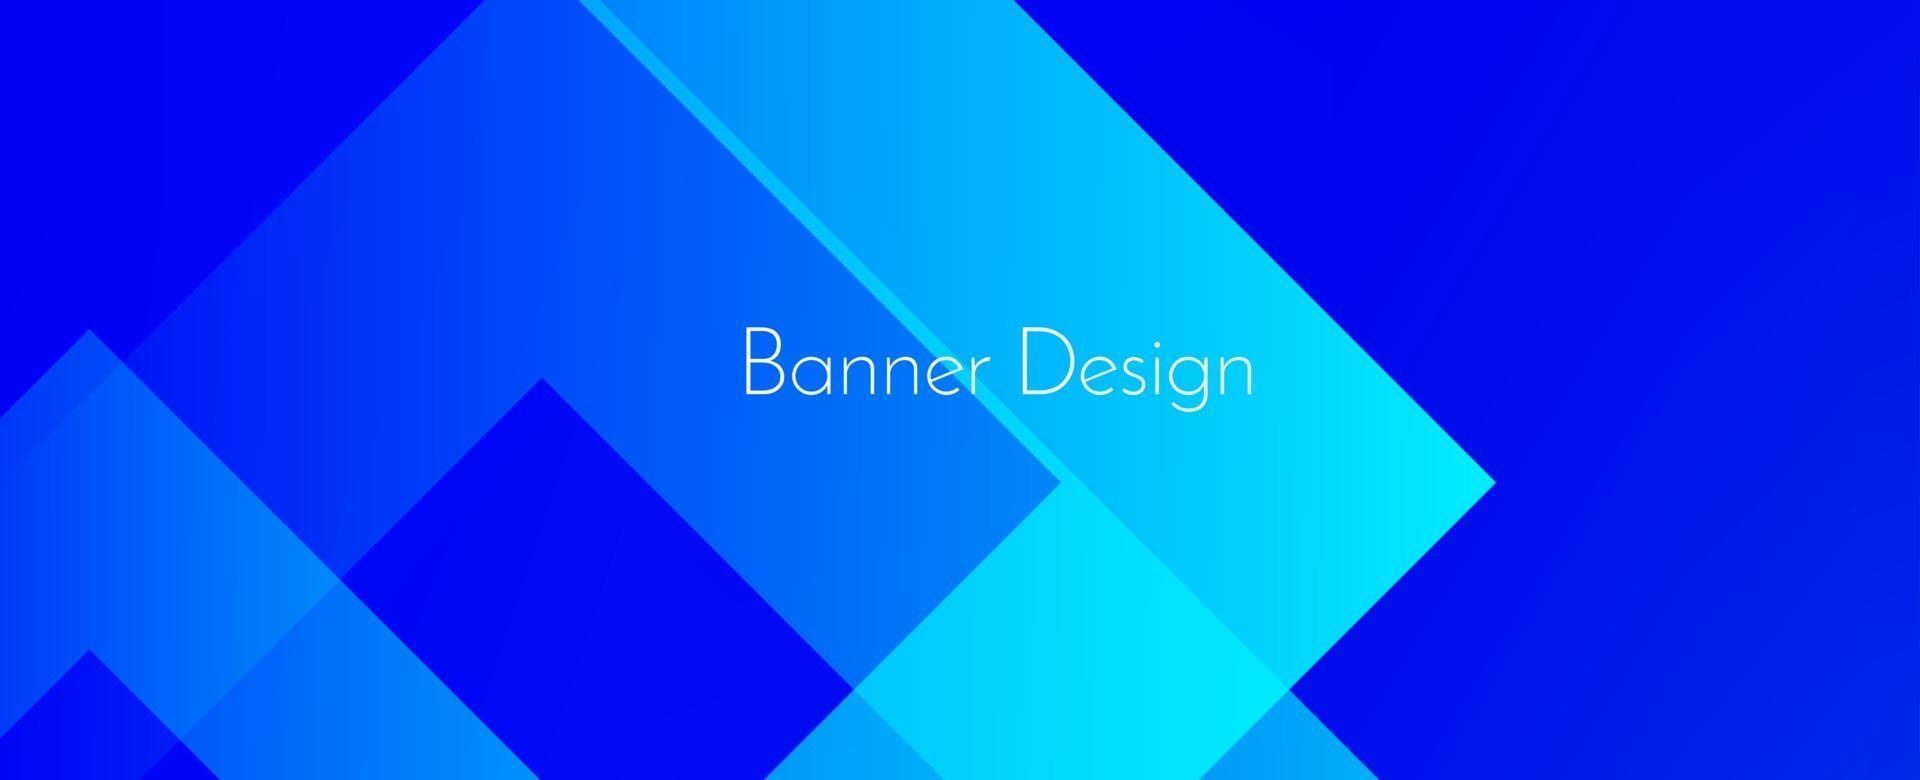 abstracte geometrische blauwe decoratieve moderne banner ontwerp achtergrond vector